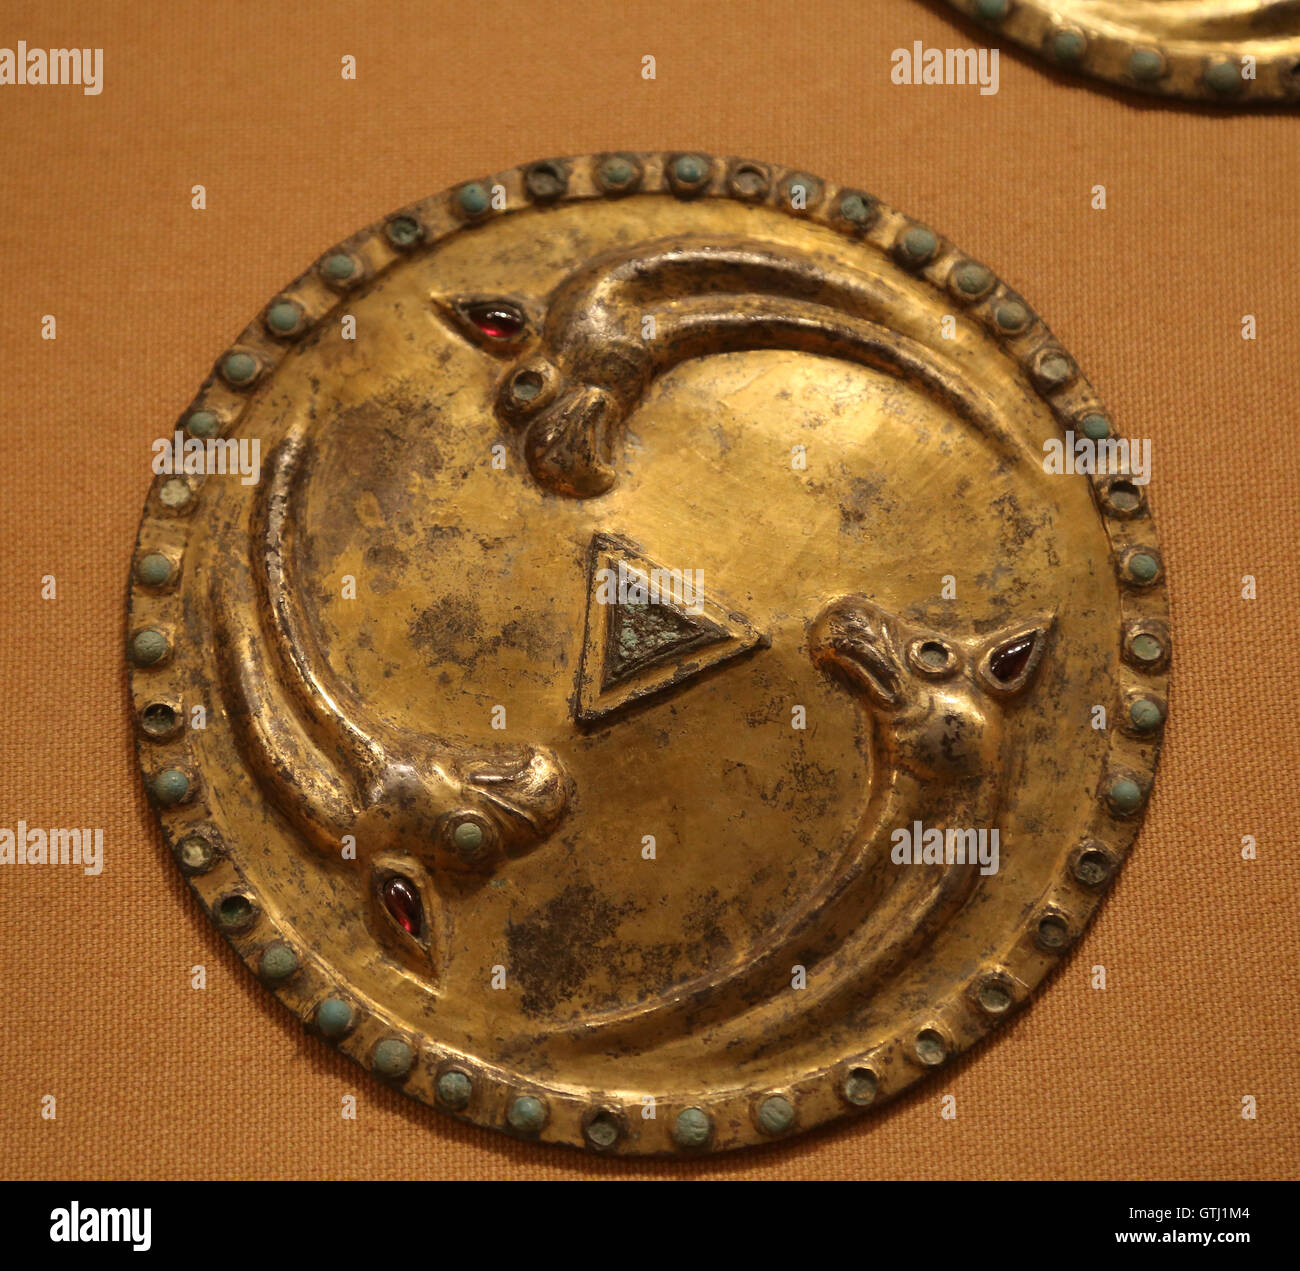 Roundel con grifos. Plata dorada, con incrustaciones de piedras, hierro respaldo. Asia central. Sármatas, 3ª-2ª siglo A.C. Foto de stock